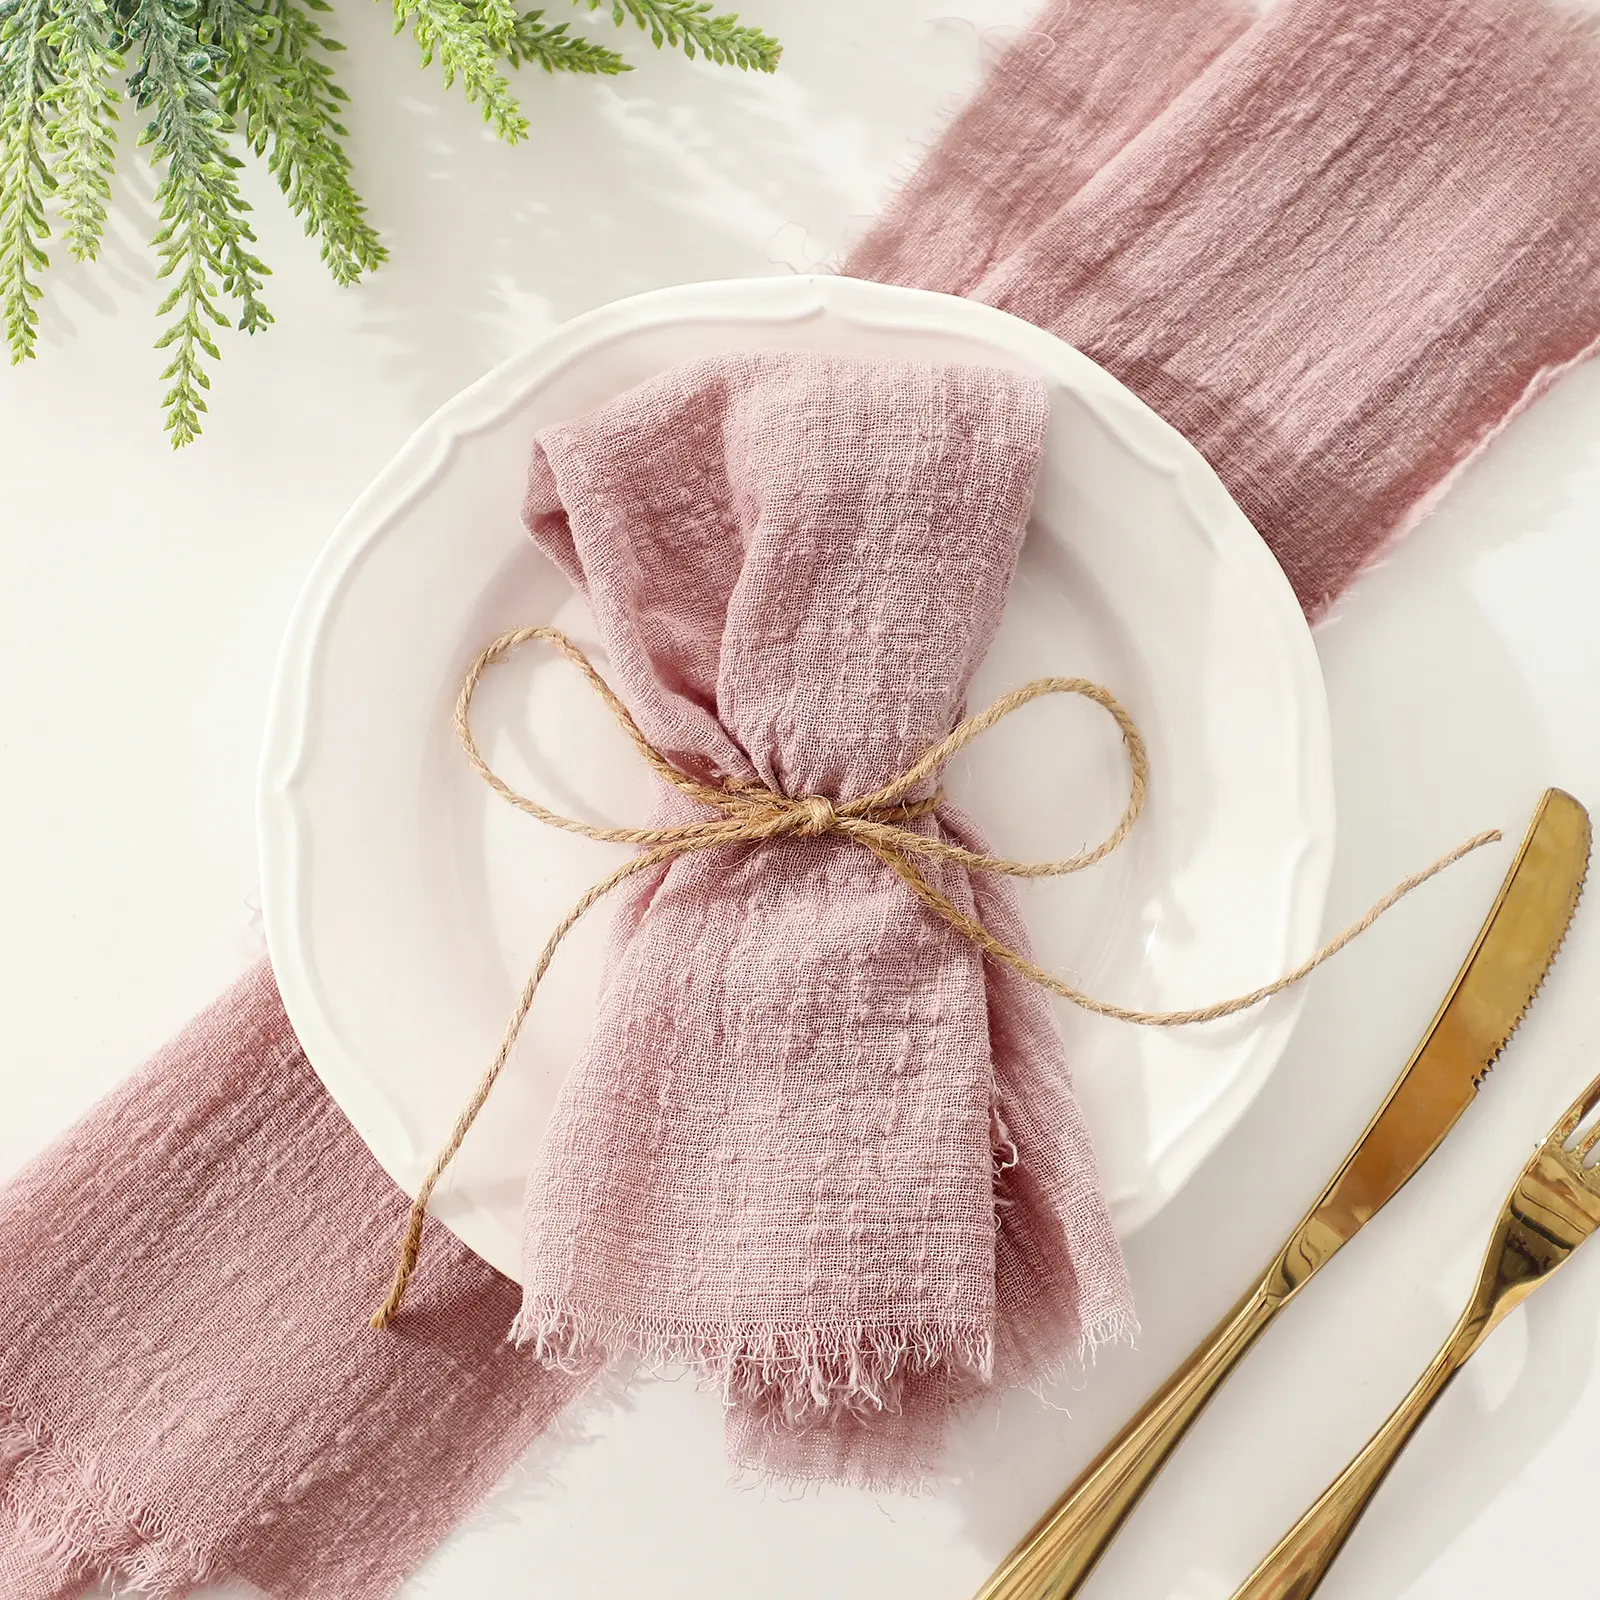 Baumwoll tischdecke Servietten mit Fransen Zarte handgemachte Stoff Servietten für Abendessen Partys Hochzeiten